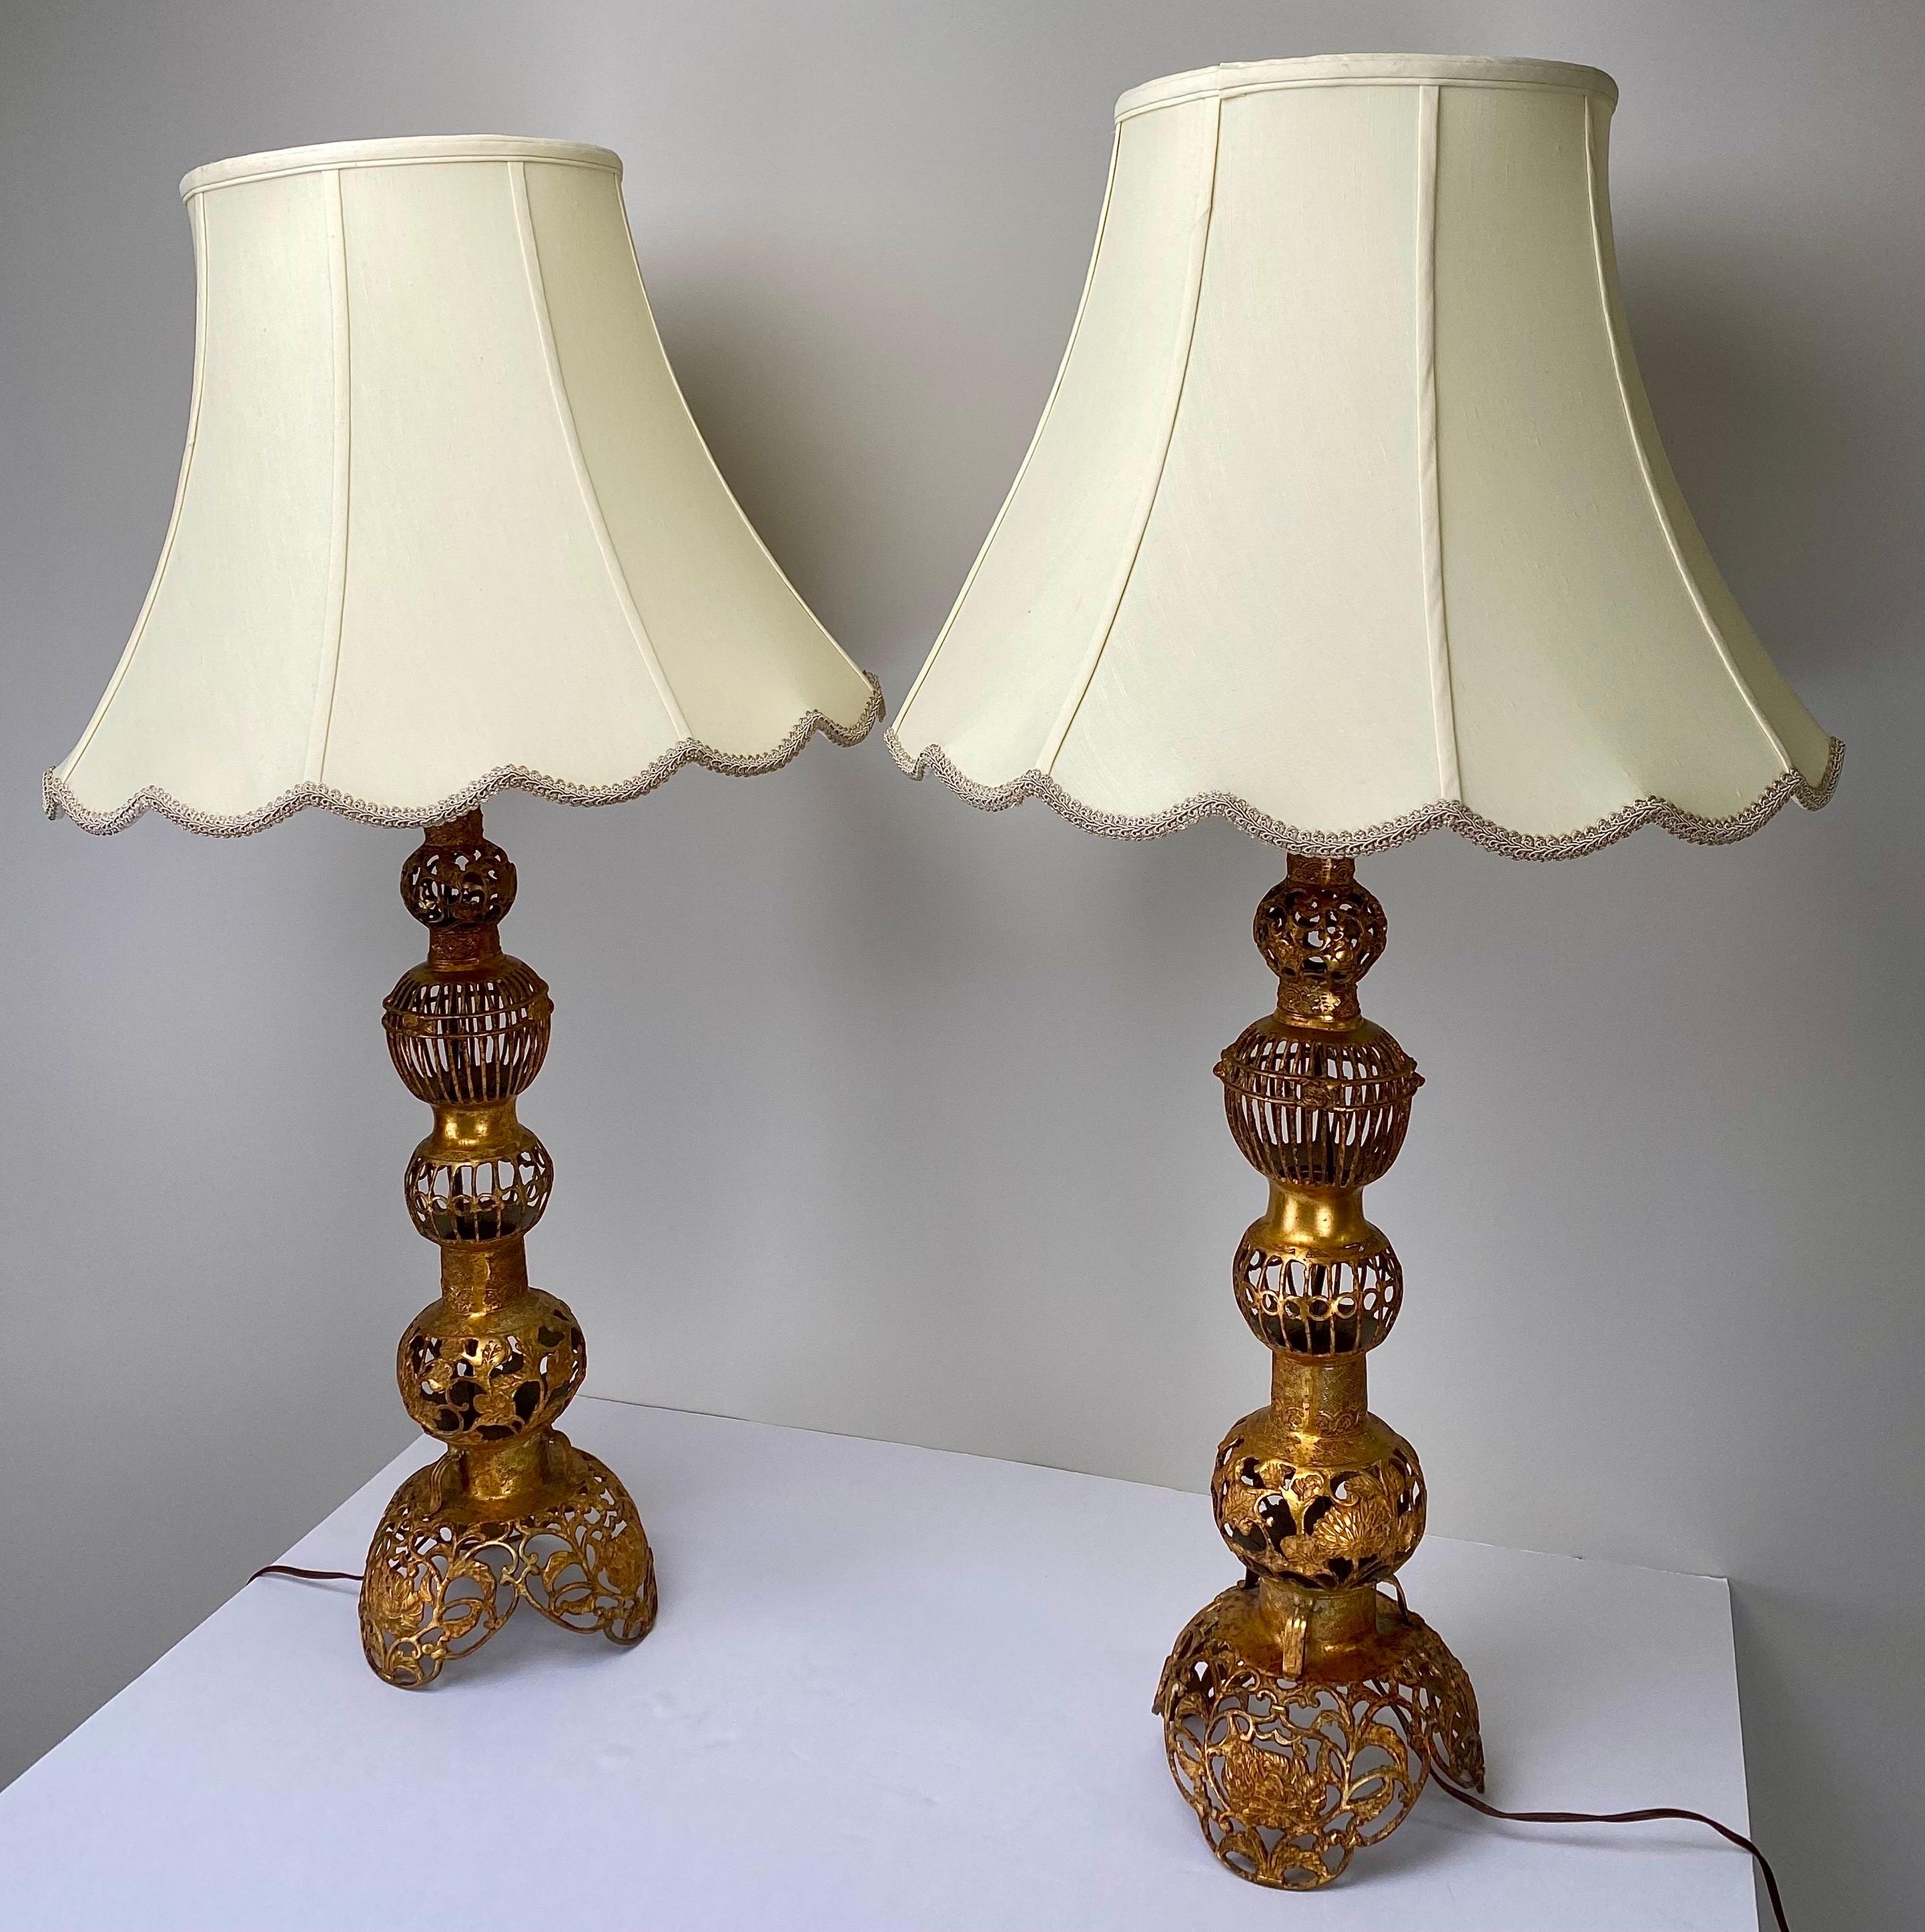 Ein auffallendes Paar Tischlampen im chinesischen Hollywood-Regency-Stil, die Opulenz und Anmut ausstrahlen. Diese kunstvoll gefertigten Stufenleuchten sind majestätisch, aus Bronze gefertigt und in einen luxuriösen Kupferton getaucht. Das filigrane